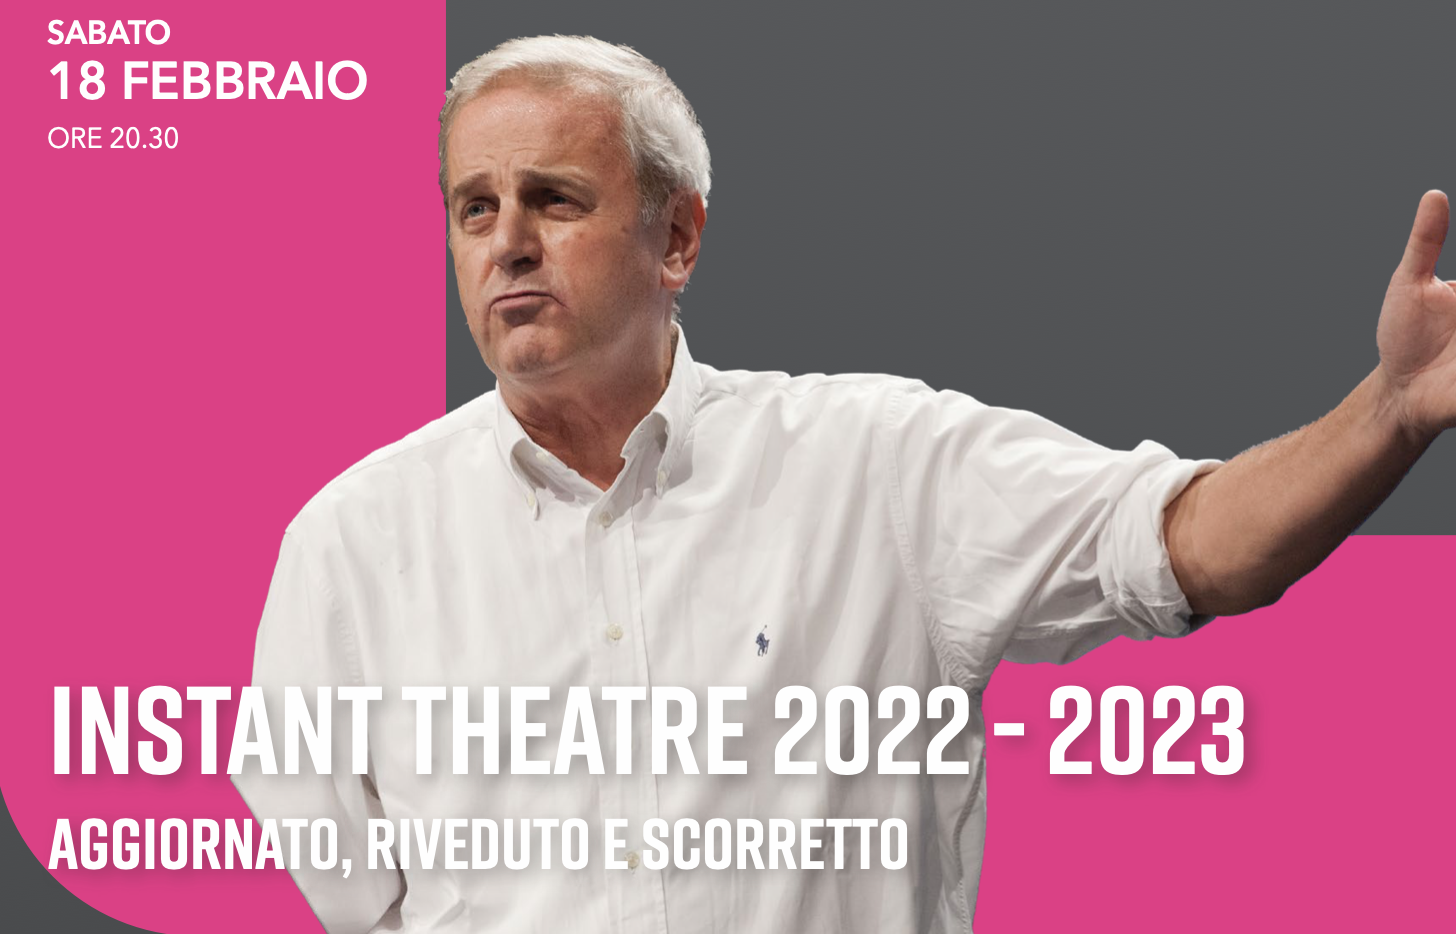 TEATRO LA CONTRADA - "INSTANT THEATRE 2022-2023": ENRICO BERTOLINO ARRIVA AL TEATRO BOBBIO DI TRIESTE, SABATO 18 FEB.